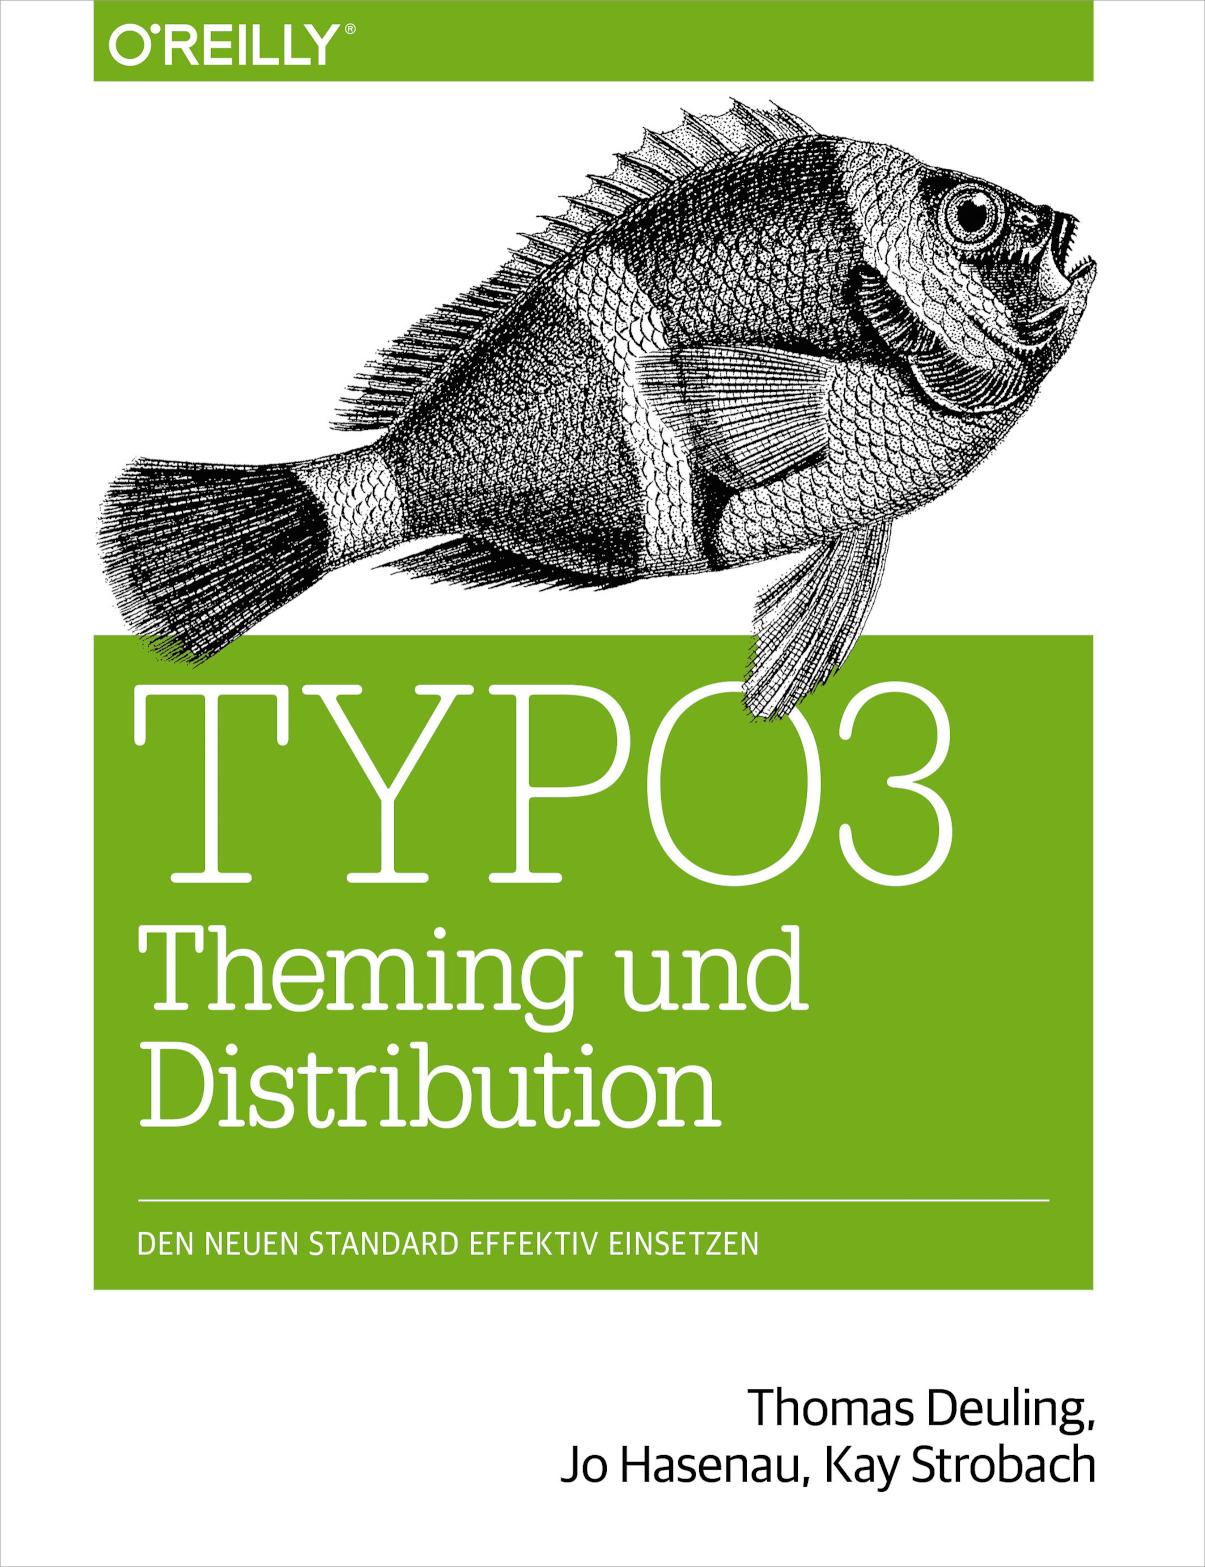 TYPO3 Theming und Distribution Den neuen Standard effektiv einsetzen